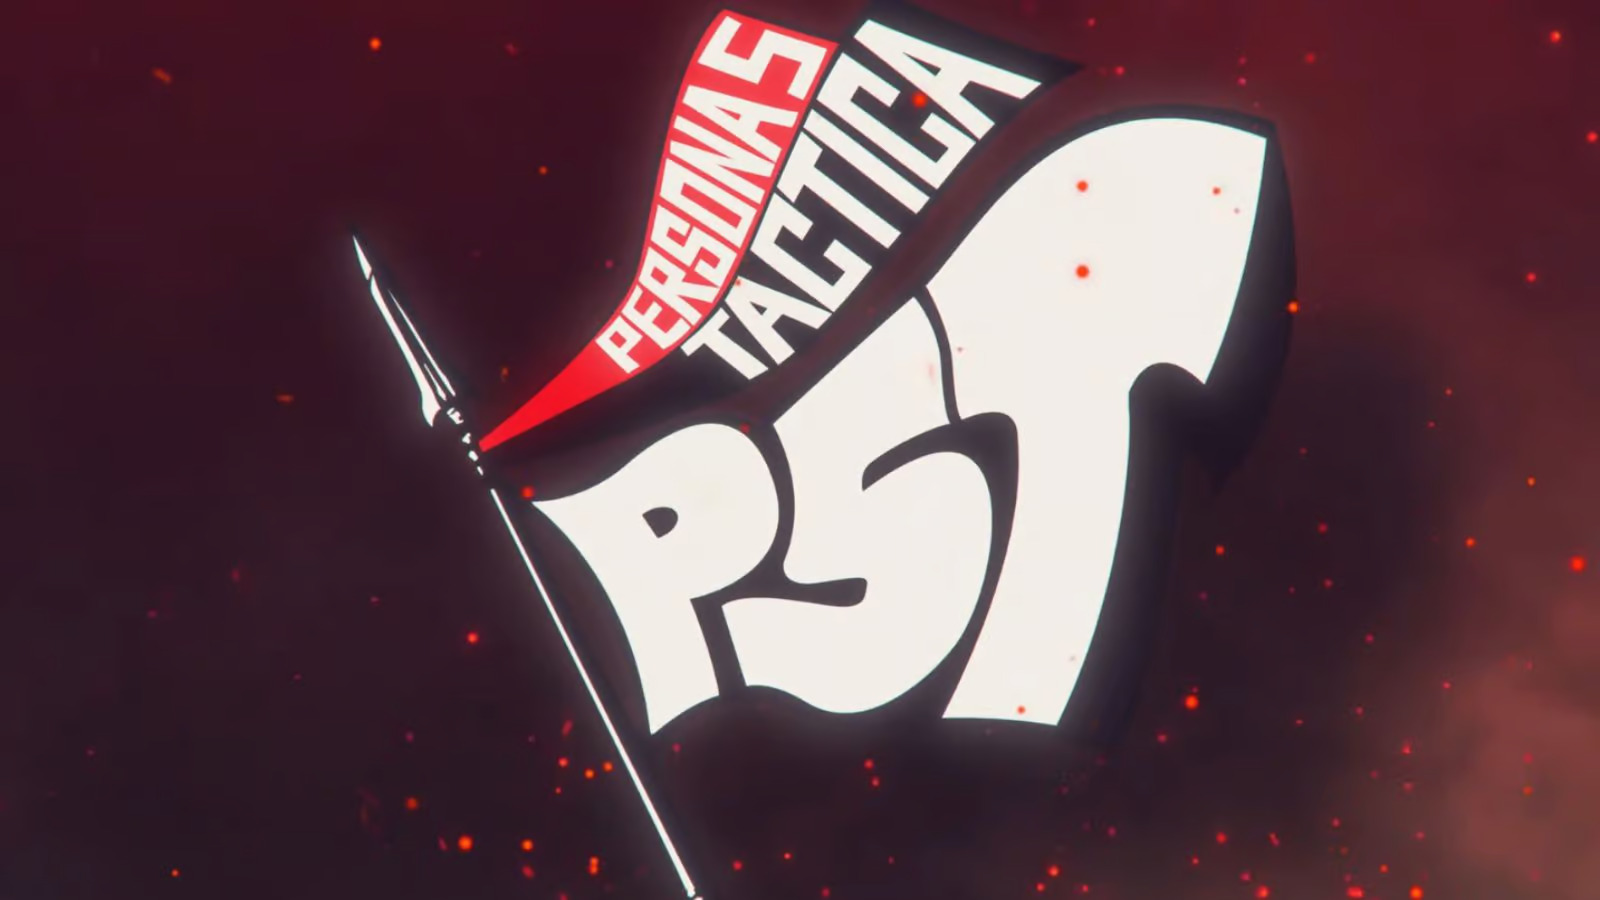 Для Persona 5 Tactica может выйти русскоязычная локализация, обнаружили официальный перевод игры: с сайта NEWXBOXONE.RU